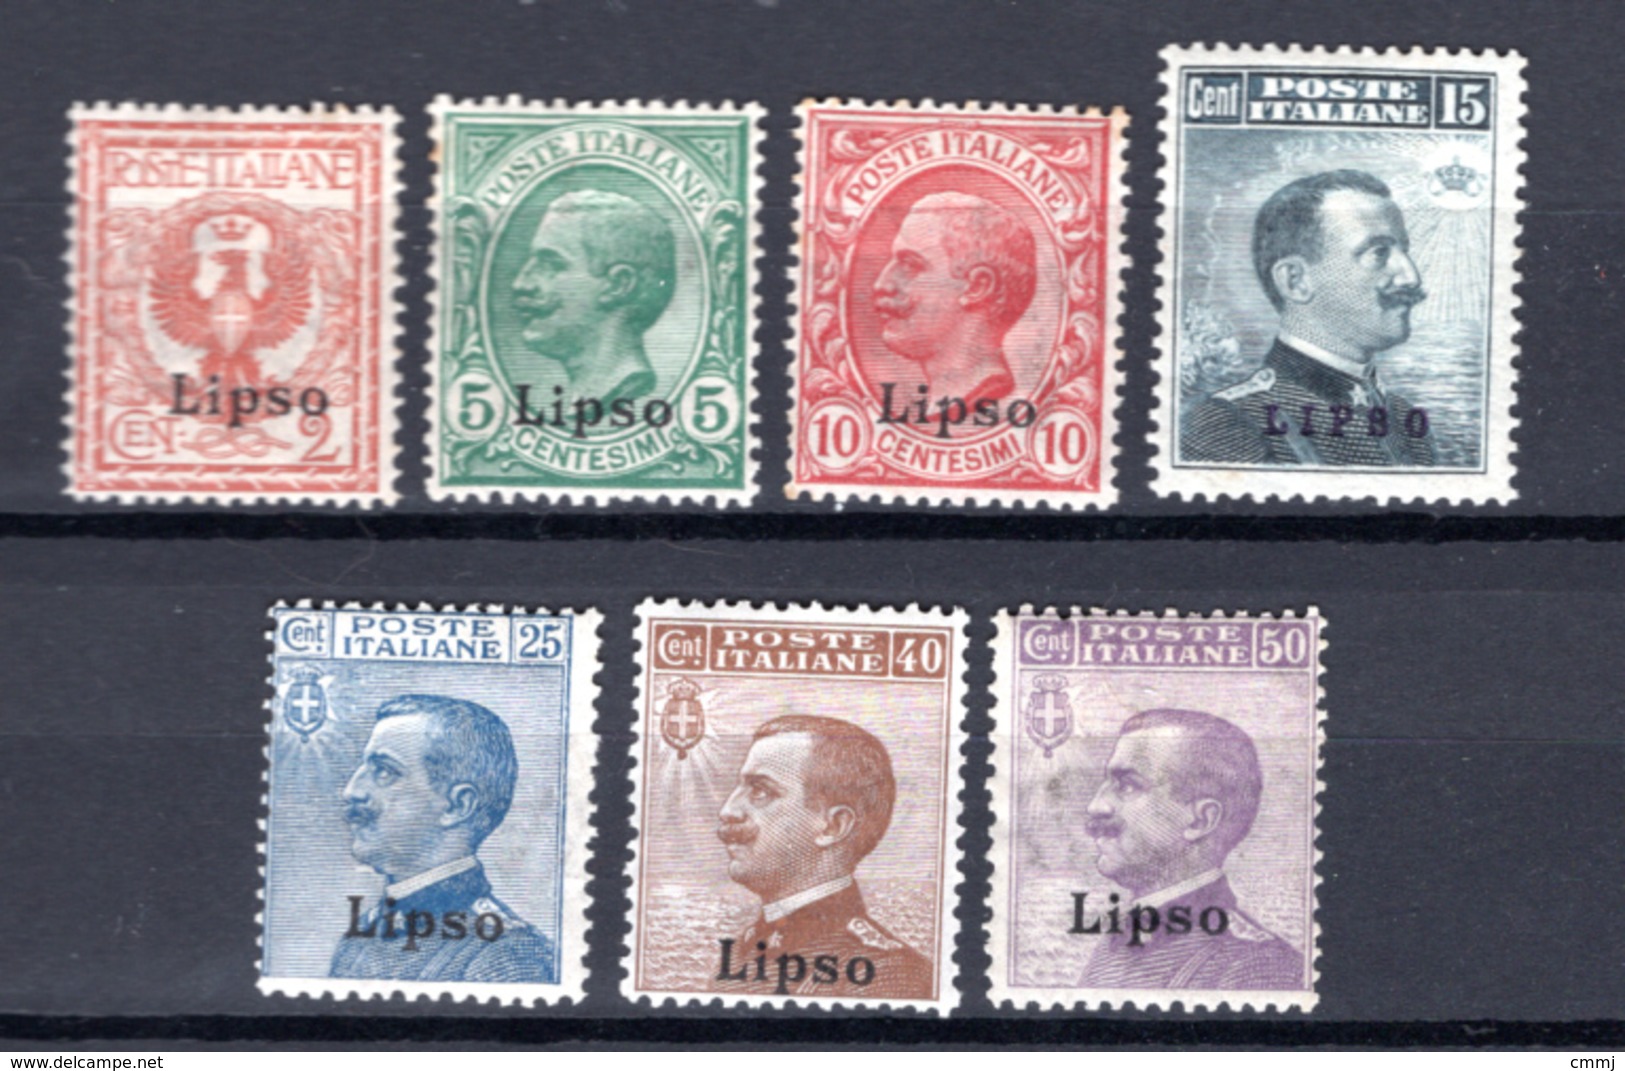 1912  - ISOLE ITALIANE DELL'EGEO: LIPSO -  Italia - Catg. Unif.  1/7 - Firmato BIONDI - LH - (W2019.38..) - Aegean (Lipso)